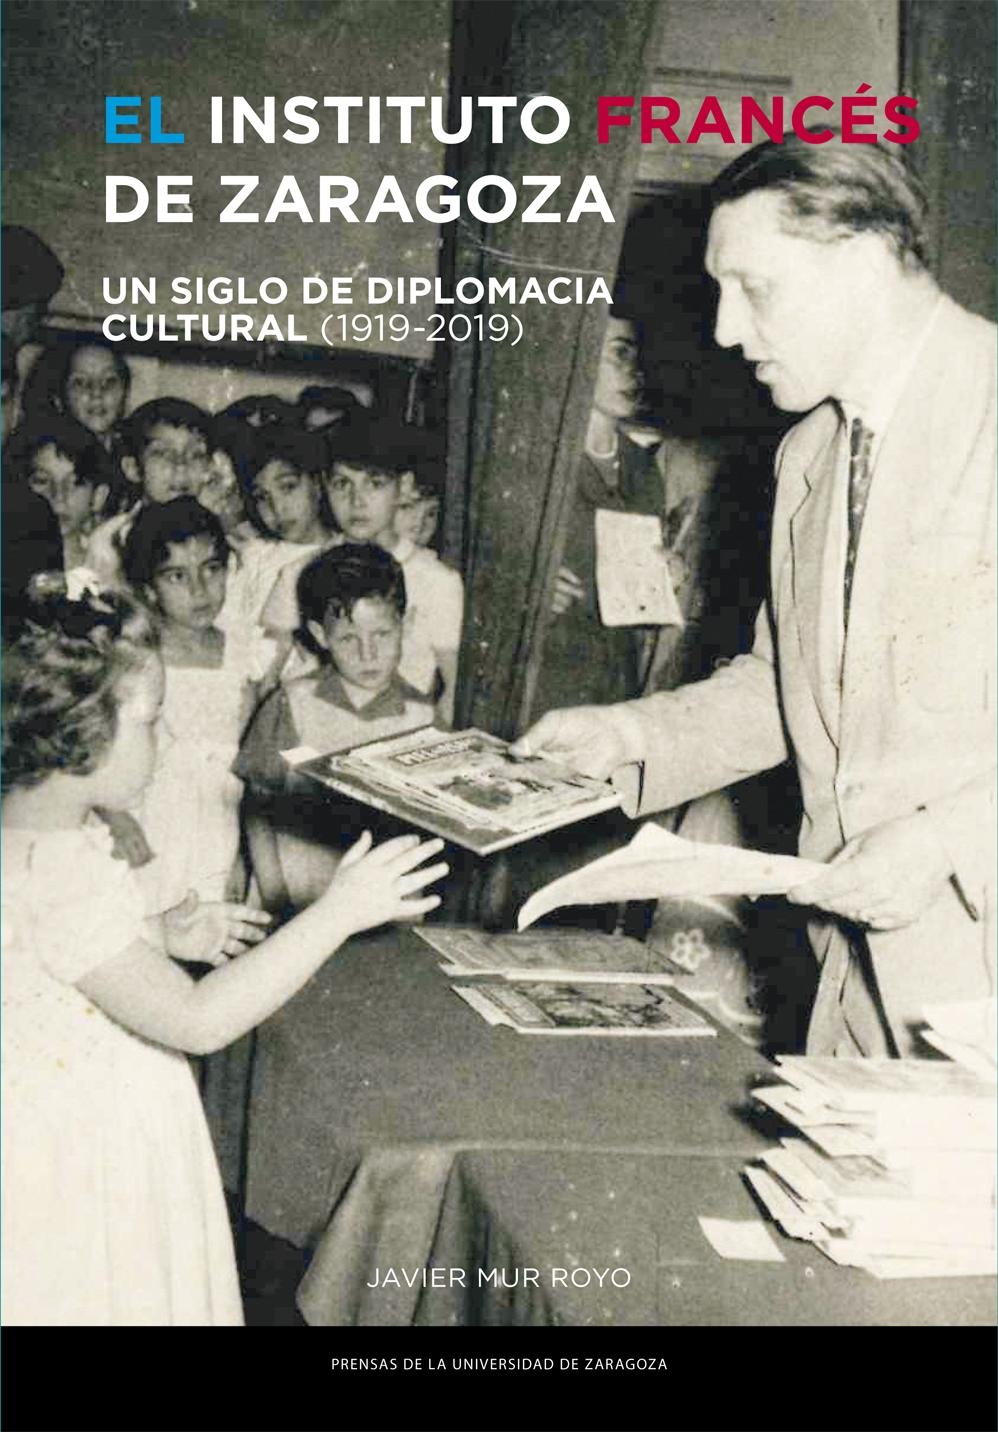 El Instituto Francés de Zaragoza "Un siglo de diplomacia cultural (1919-2019)"